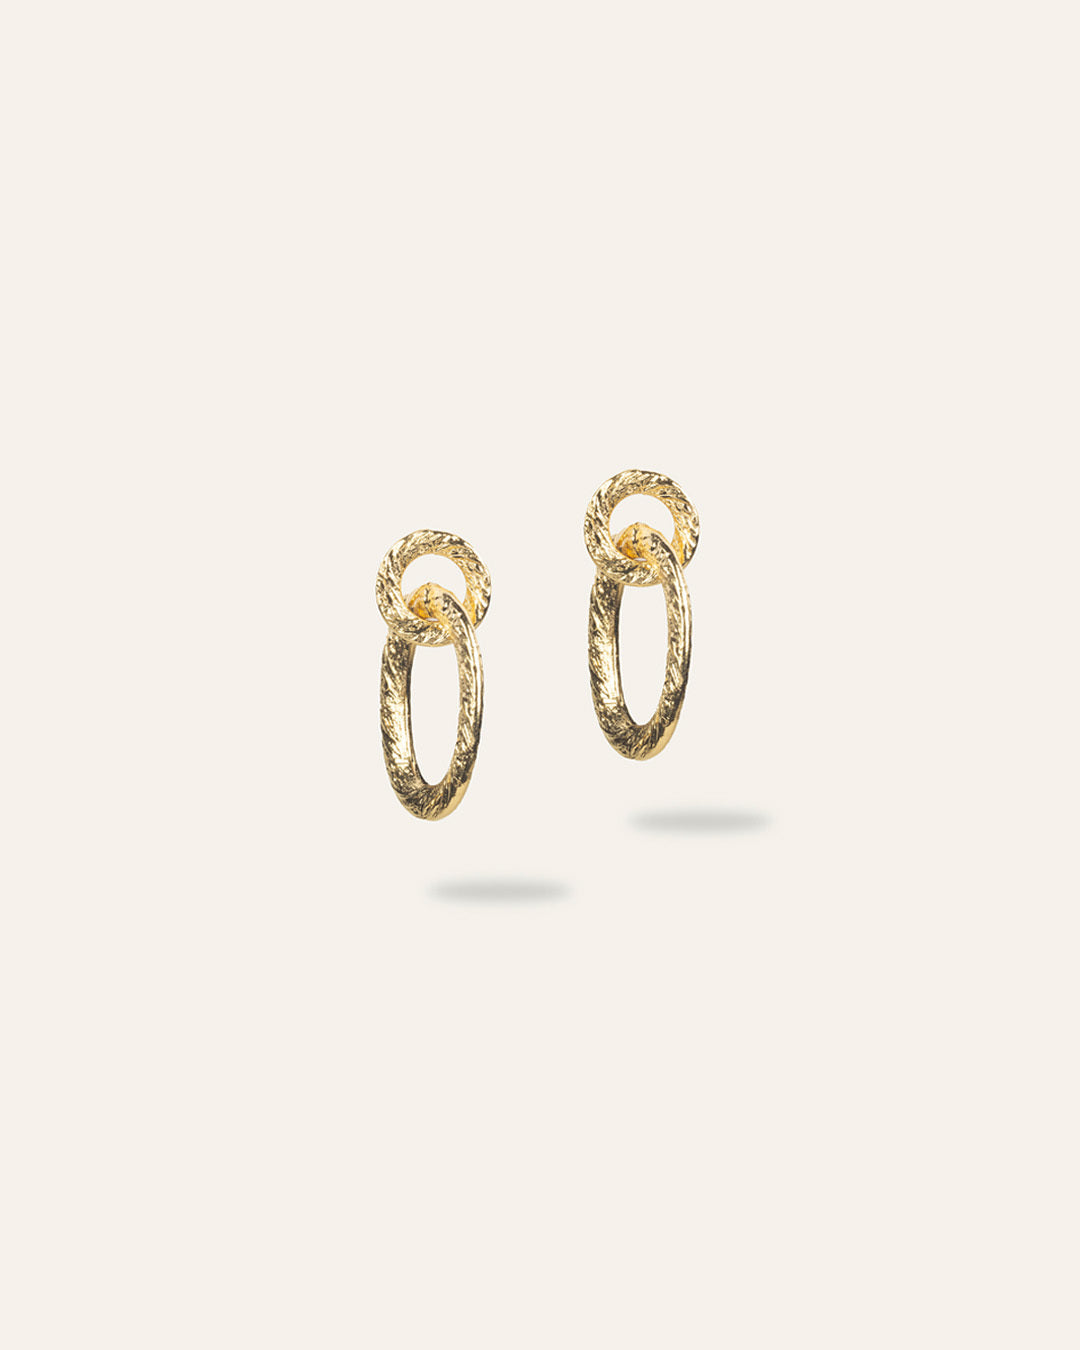 Boucles d'oreilles pendantes composées d'un anneau rond et d'un anneau ovale, au motif texturé de style vintage en plaqué or 3 microns made in France.